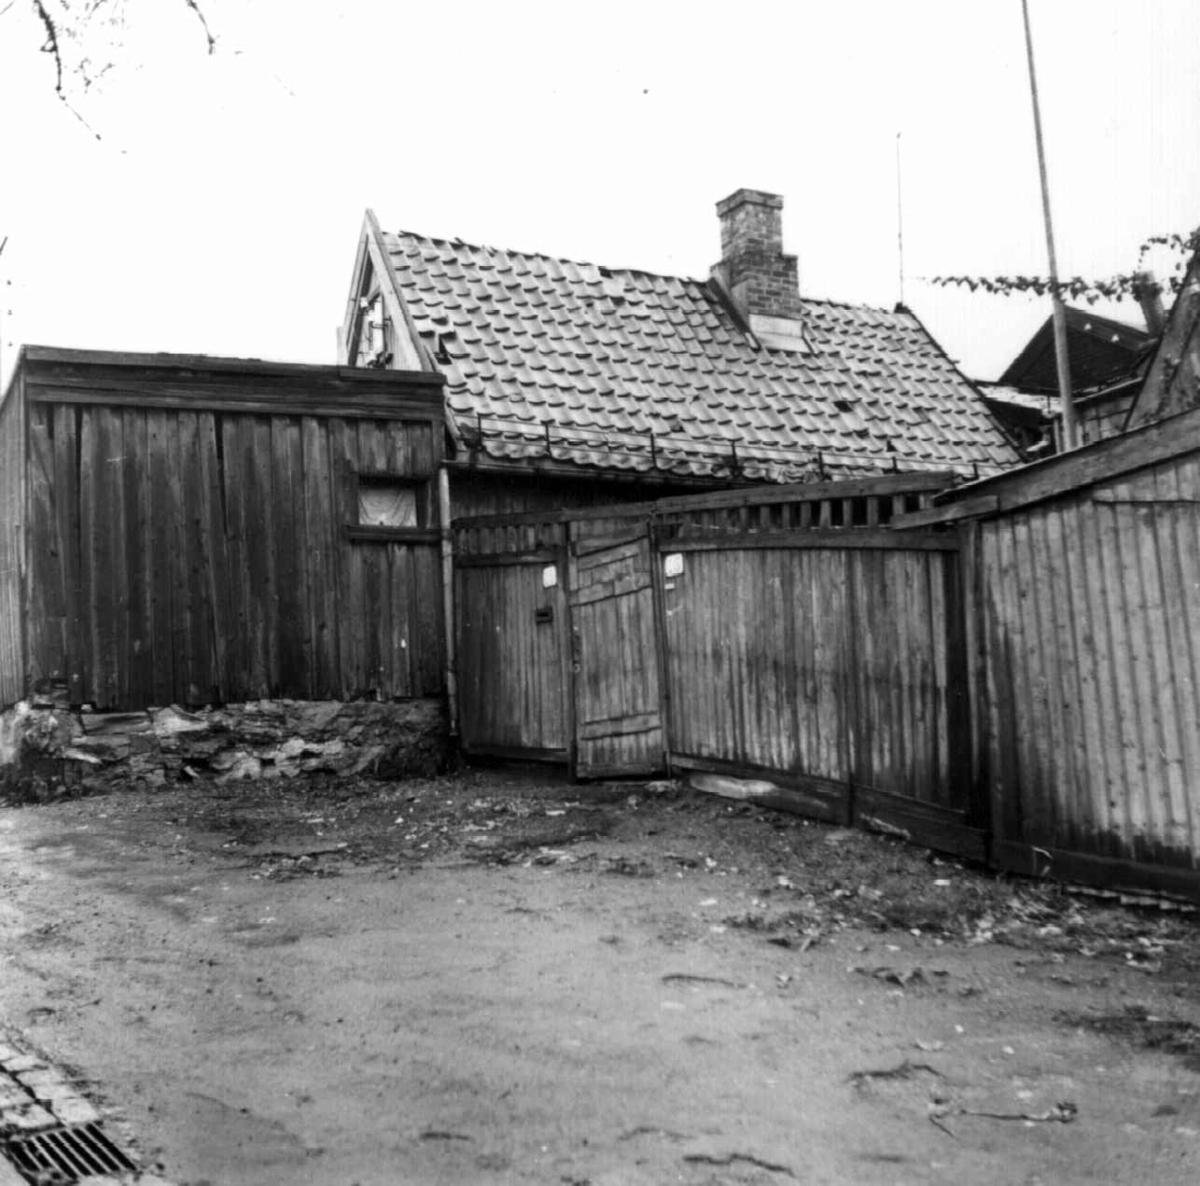 Johannes gate 16-18, Enerhaugen, Oslo 1959. Småhus bak plankegjerde.